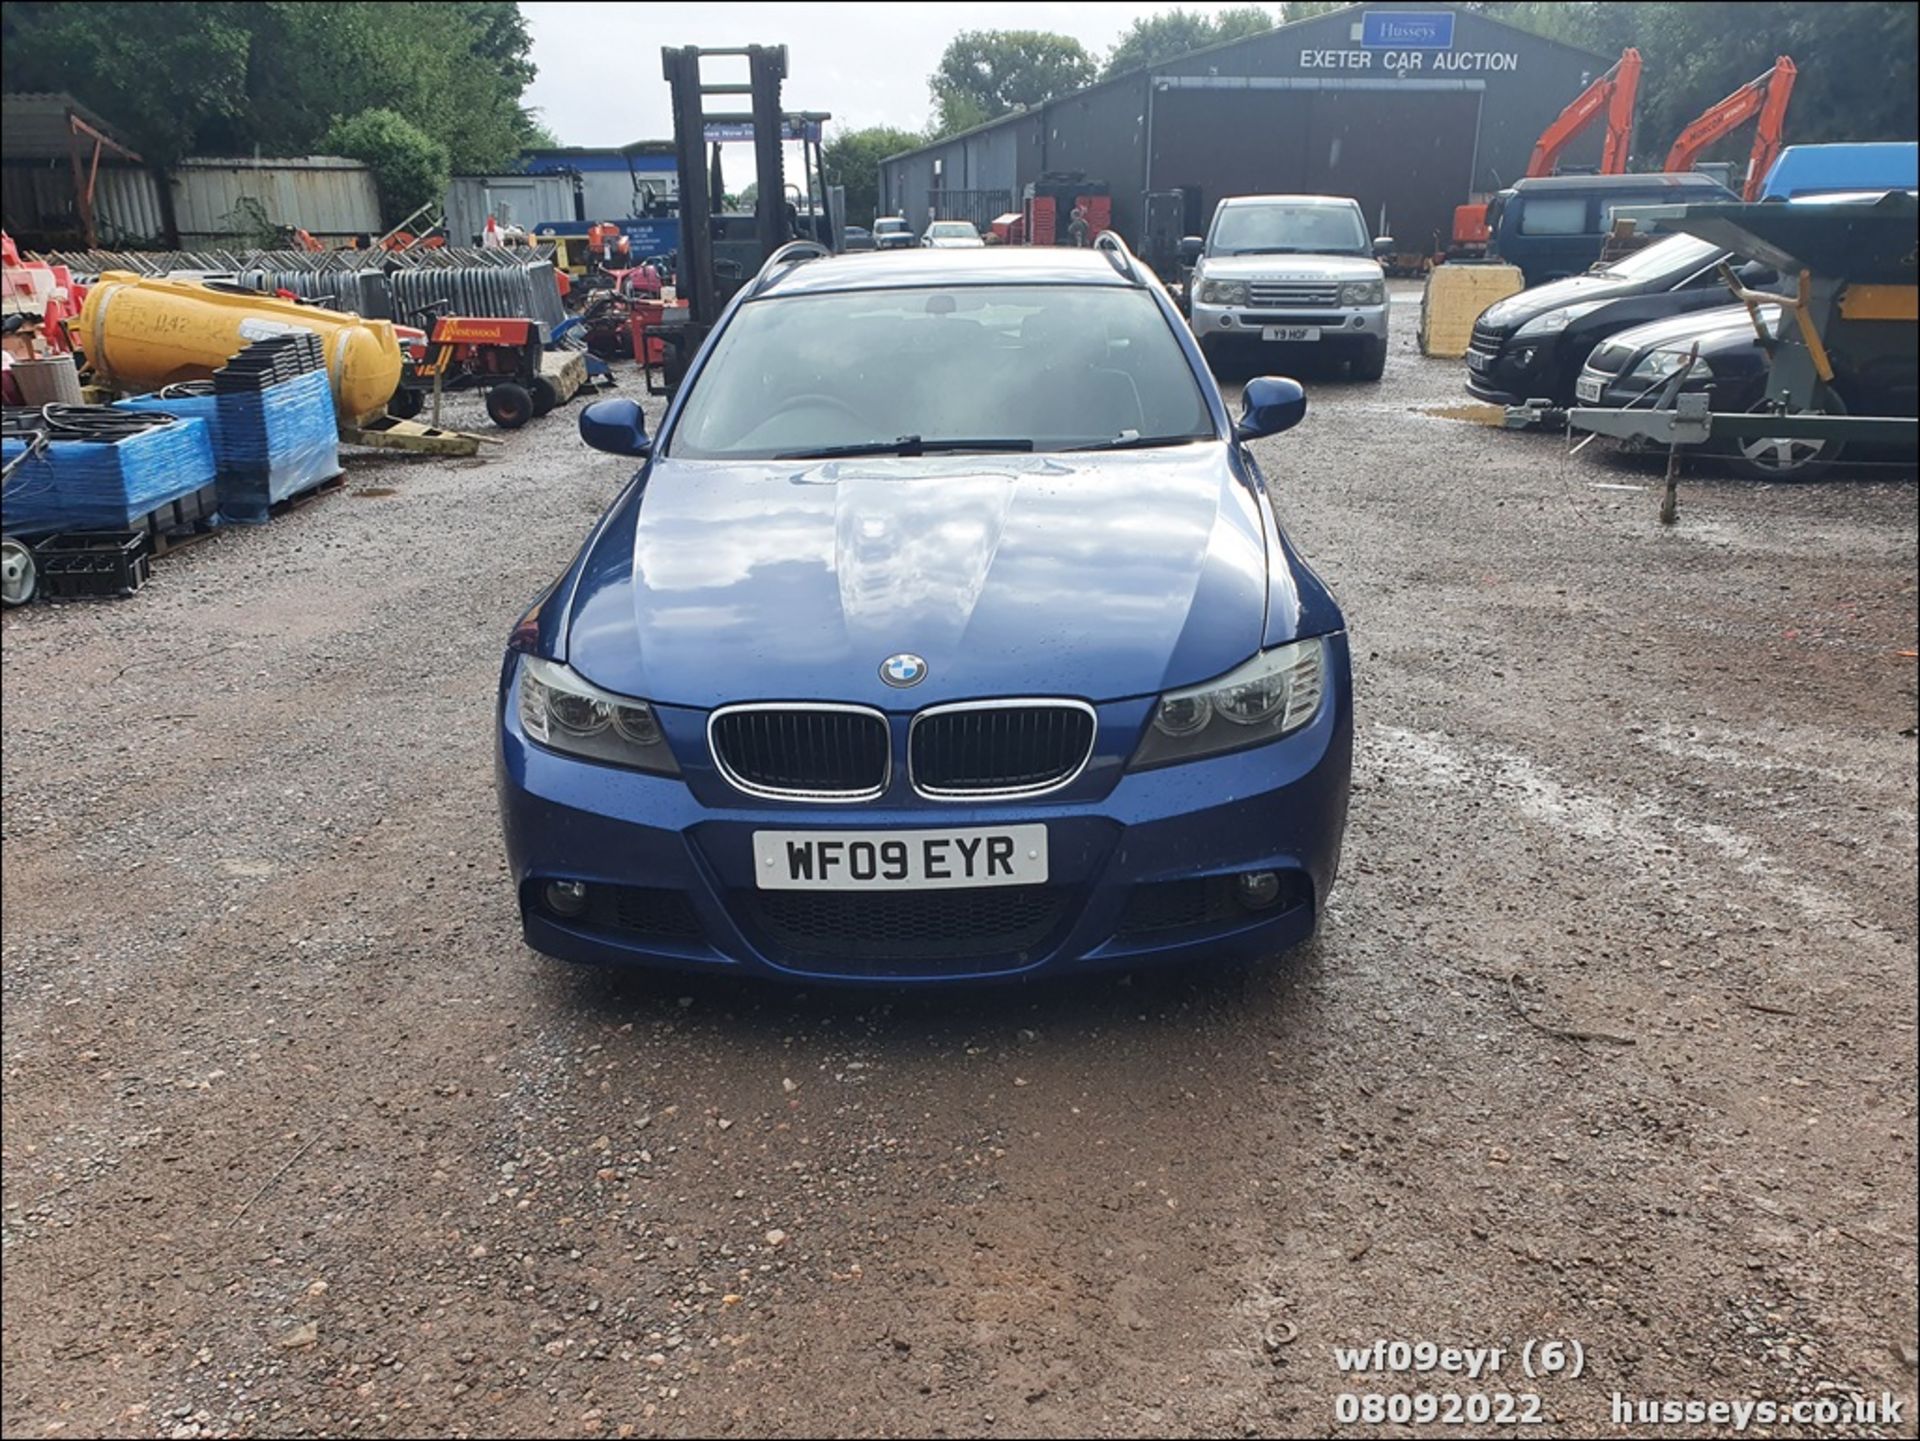 09/09 BMW 318I M SPORT TOURING - 1995cc 5dr Estate (Blue, 122k) - Image 6 of 47